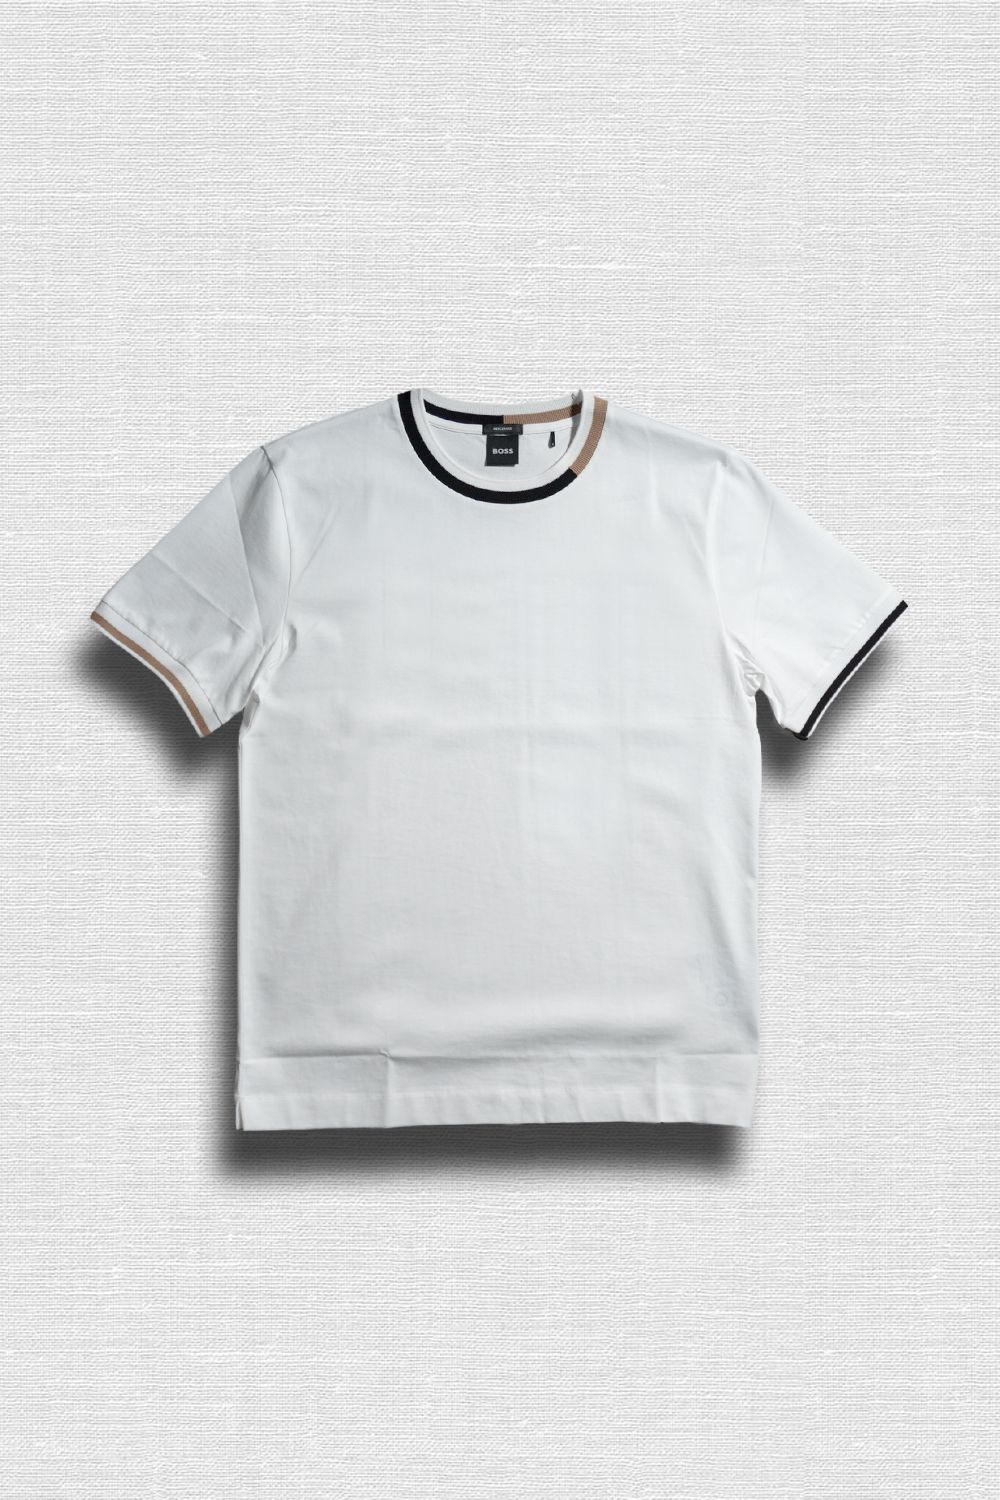 トップス / Tシャツ・カットソー 通販 | Sir online store / サー 